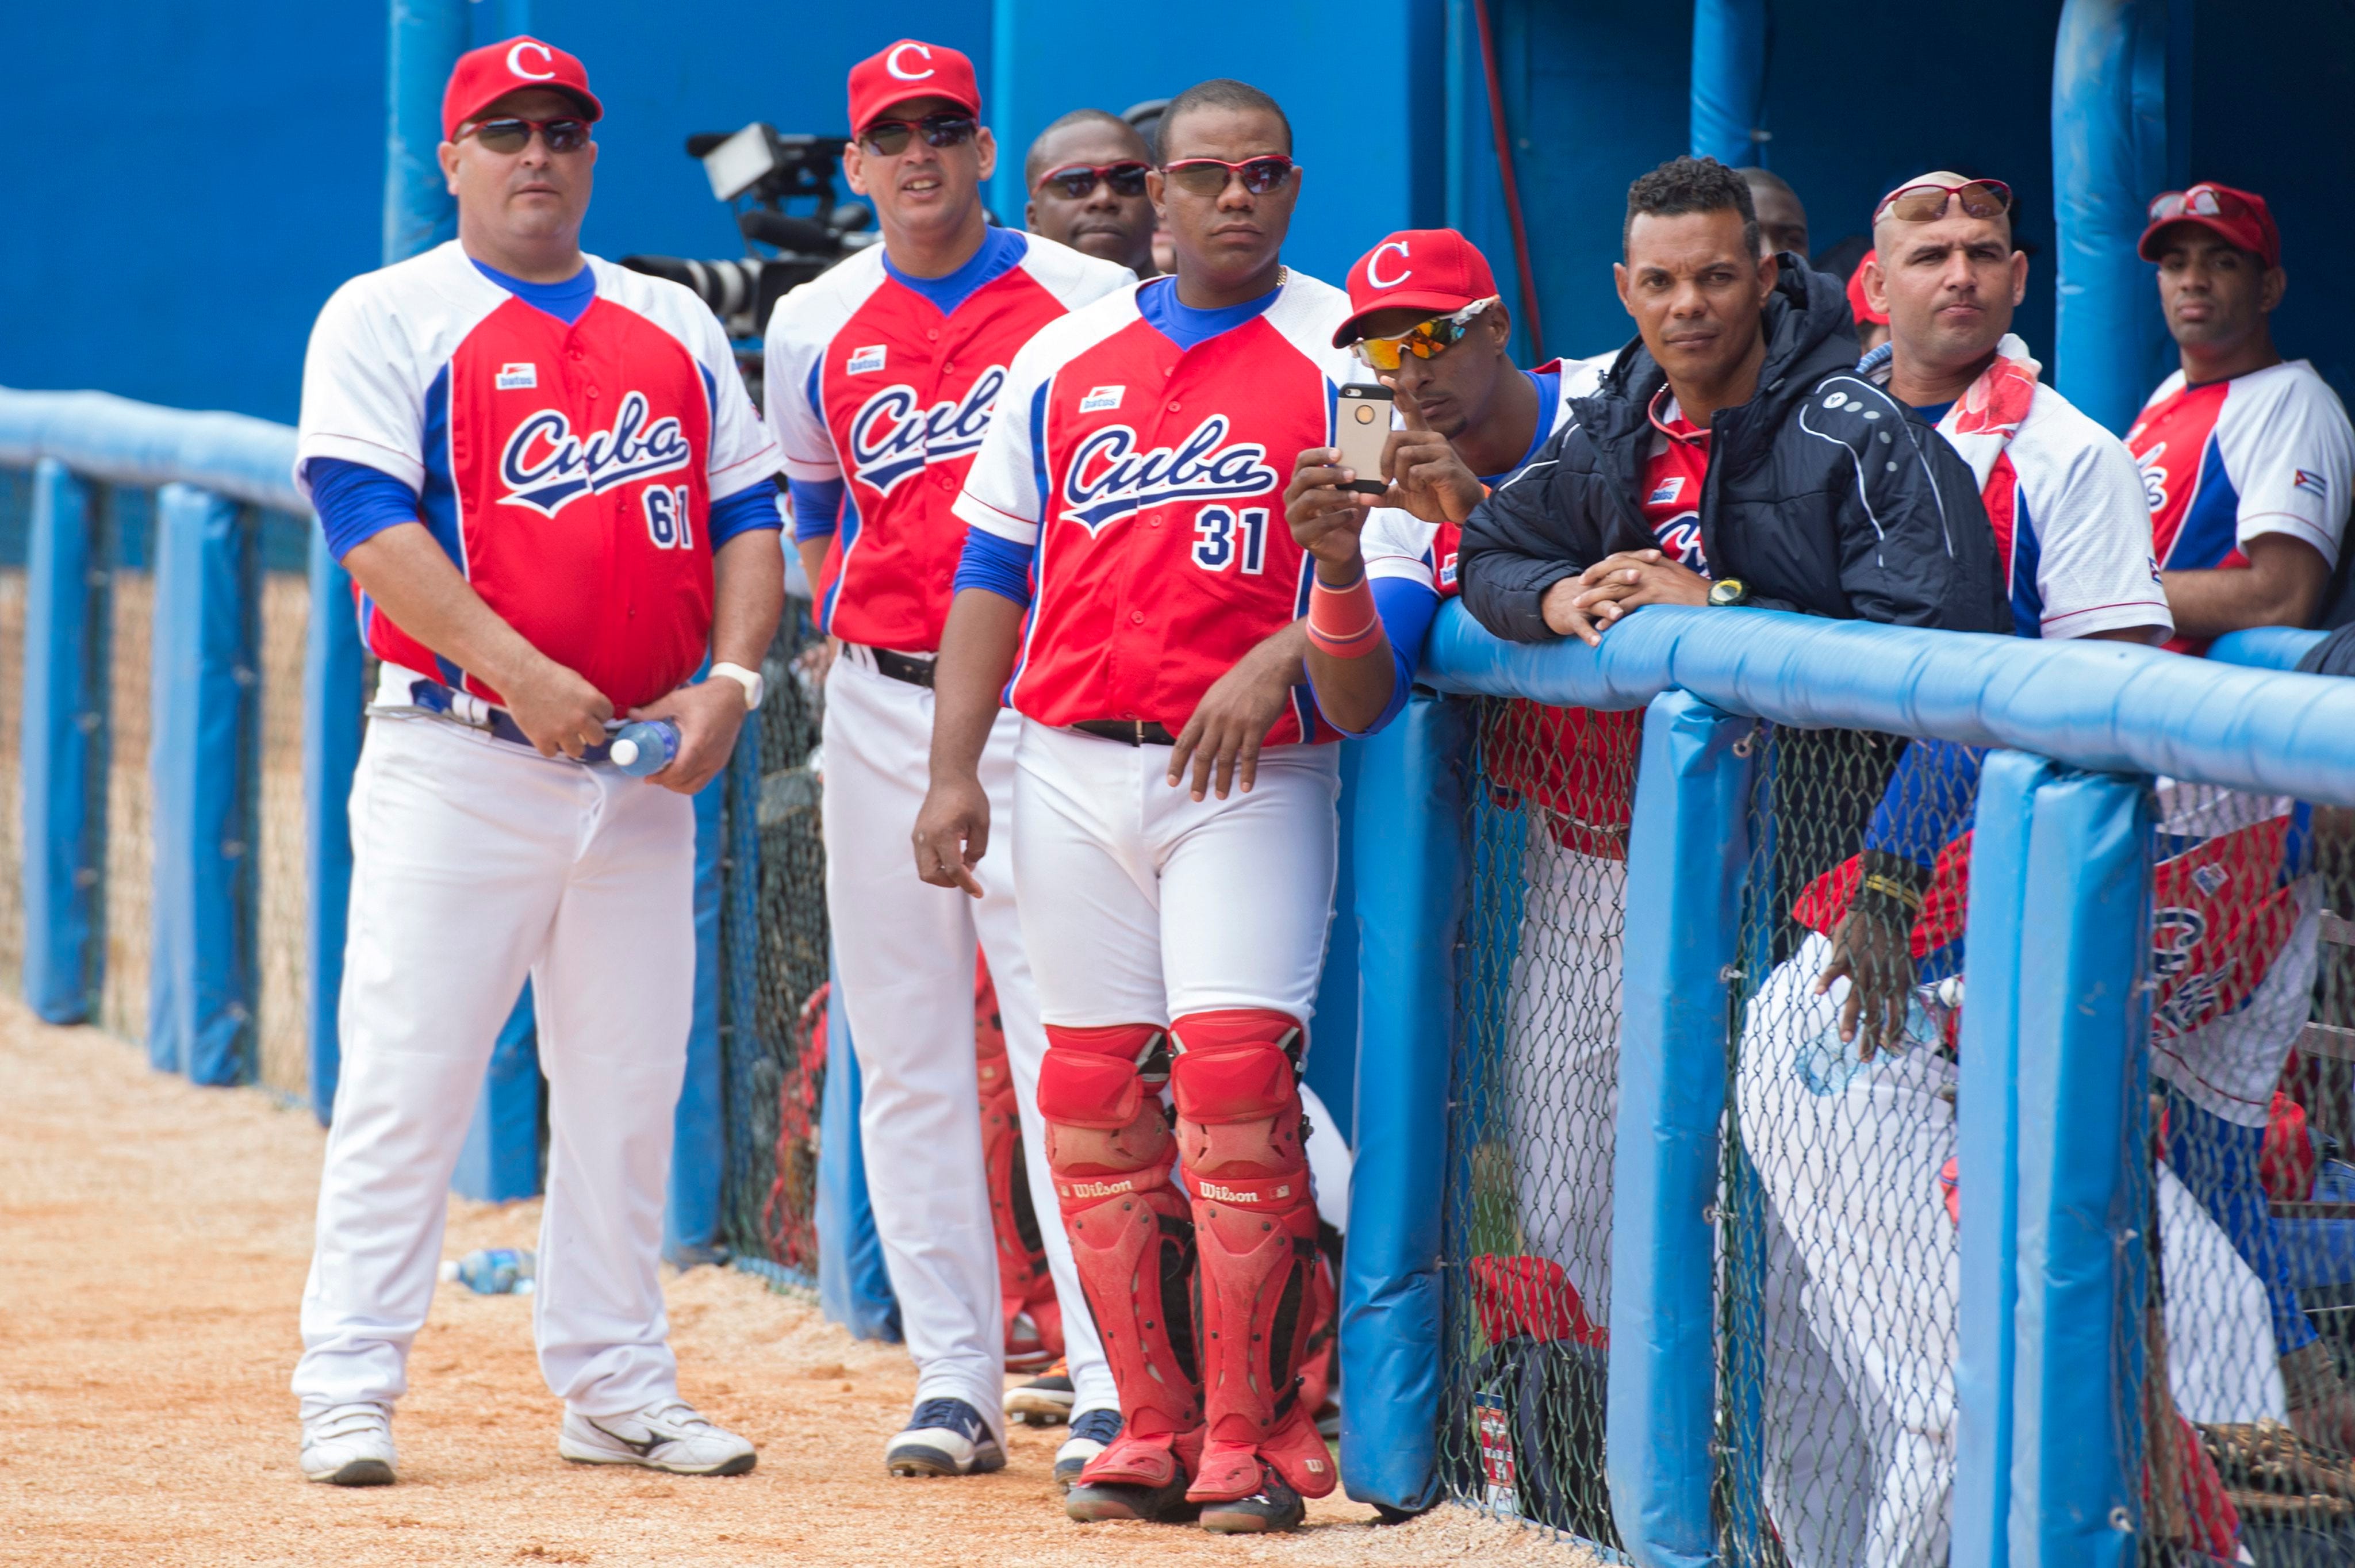 cuba national baseball team jersey